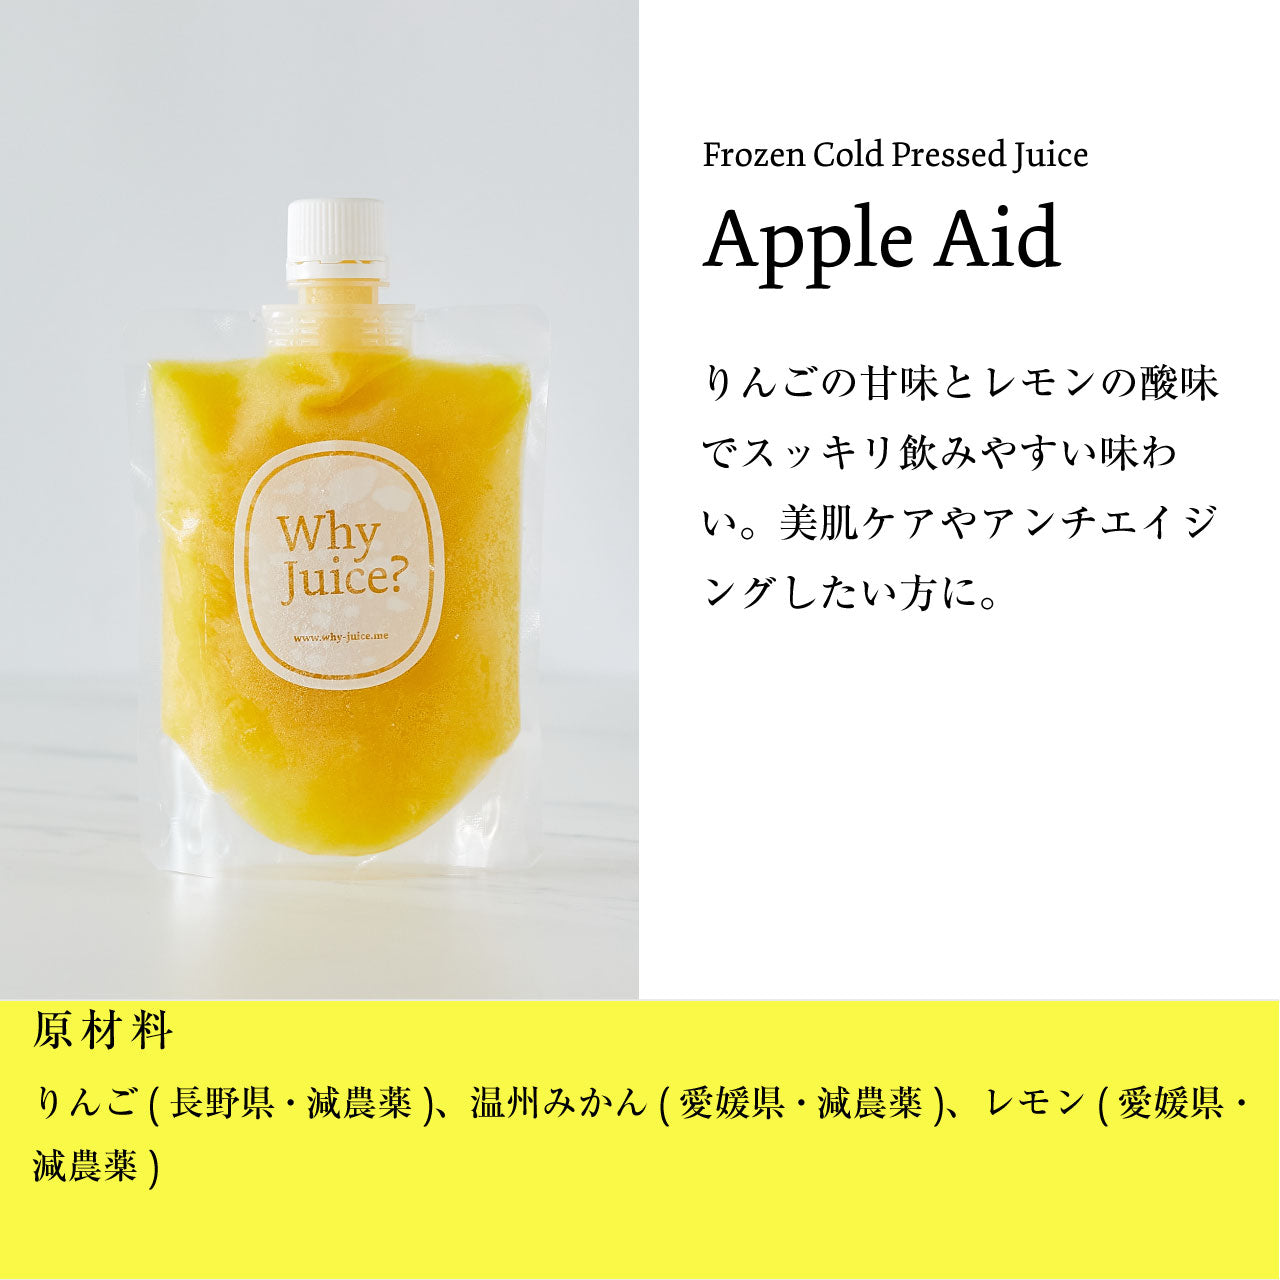 【ジュースクレンズ】Frozen Cold Pressed Juice 【Apple Aid】6本セット【コールドプレスジュース】